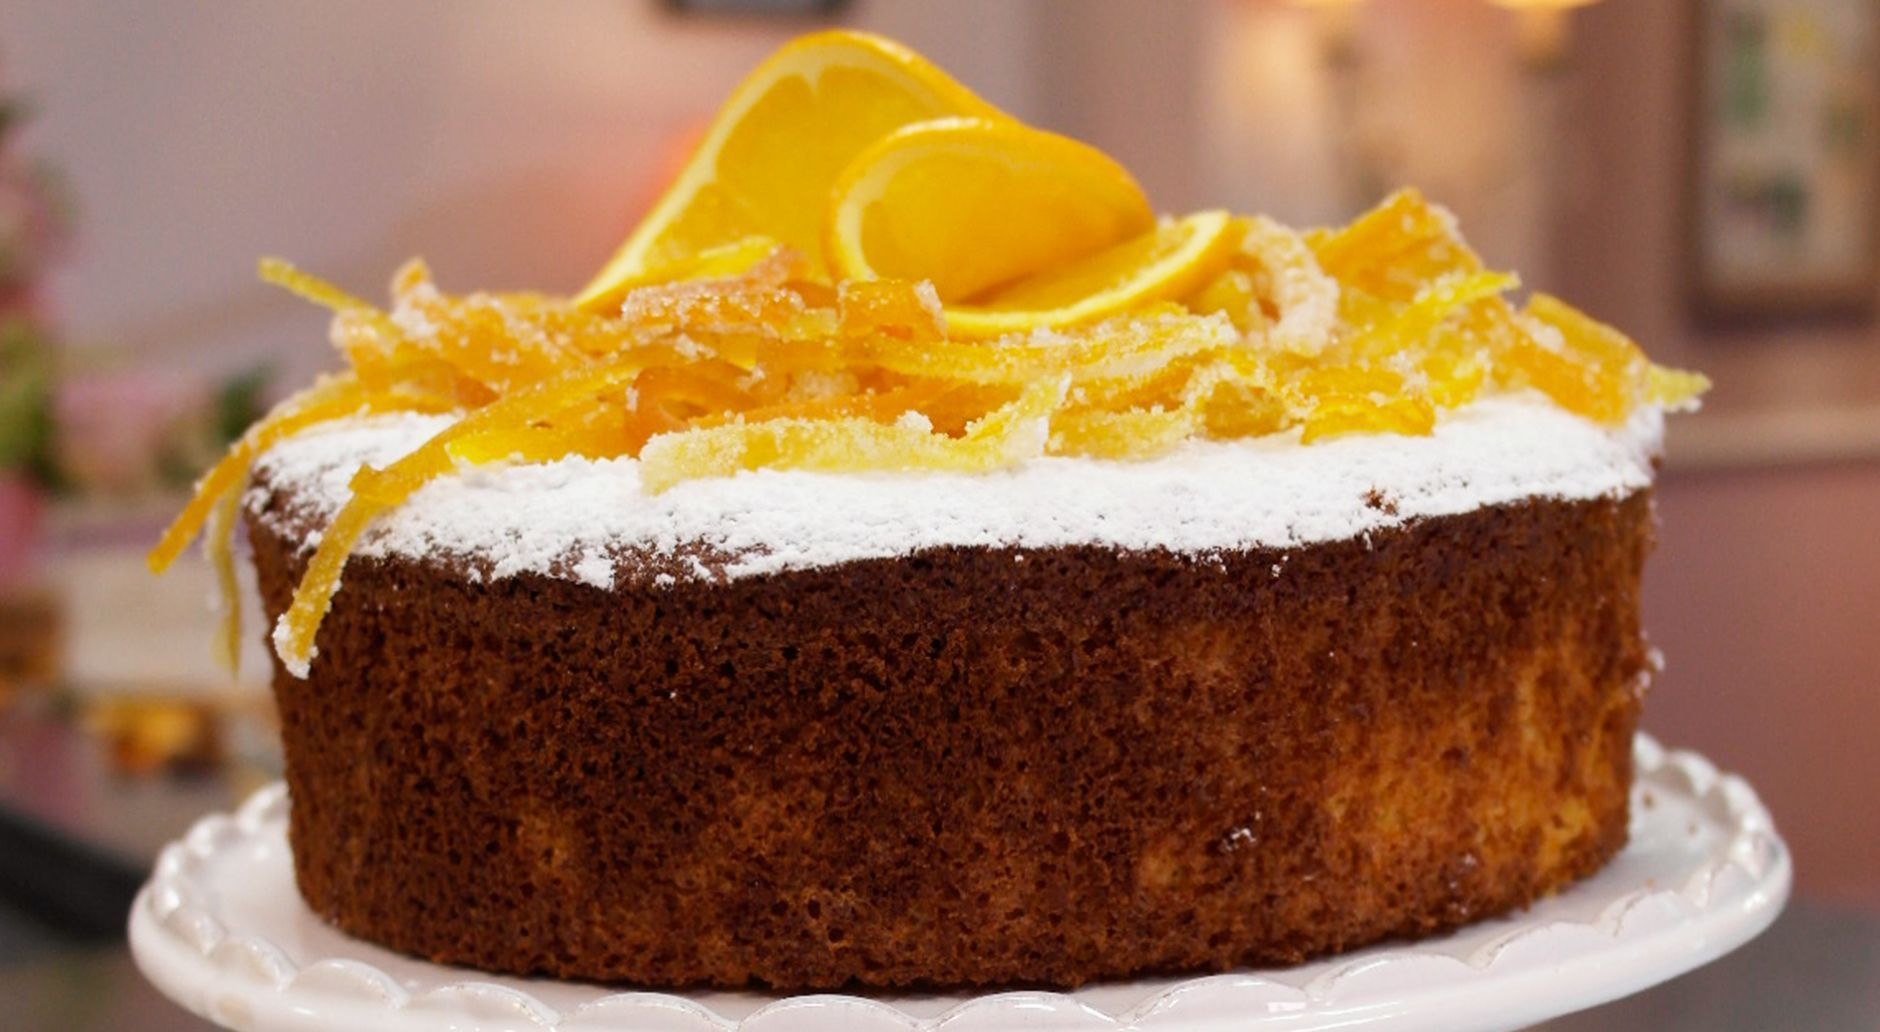 Kuchen mit Orangen und Zimt: Das Rezept aus Enie backt